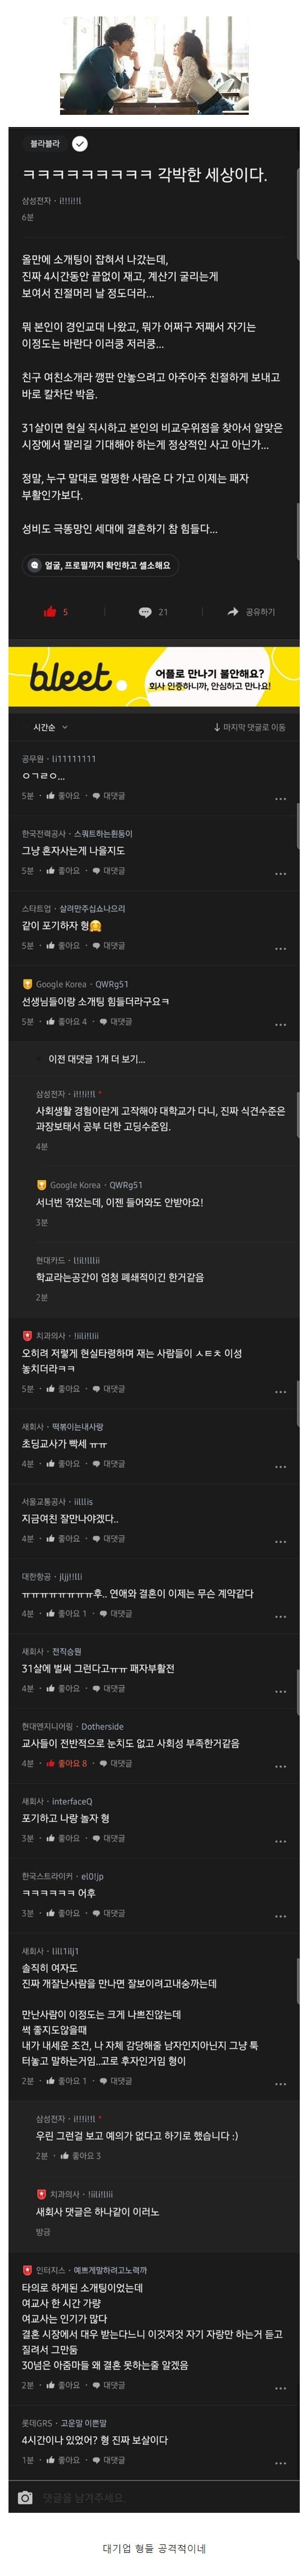 블라인드에서 난리난 여교사 소개팅 후기